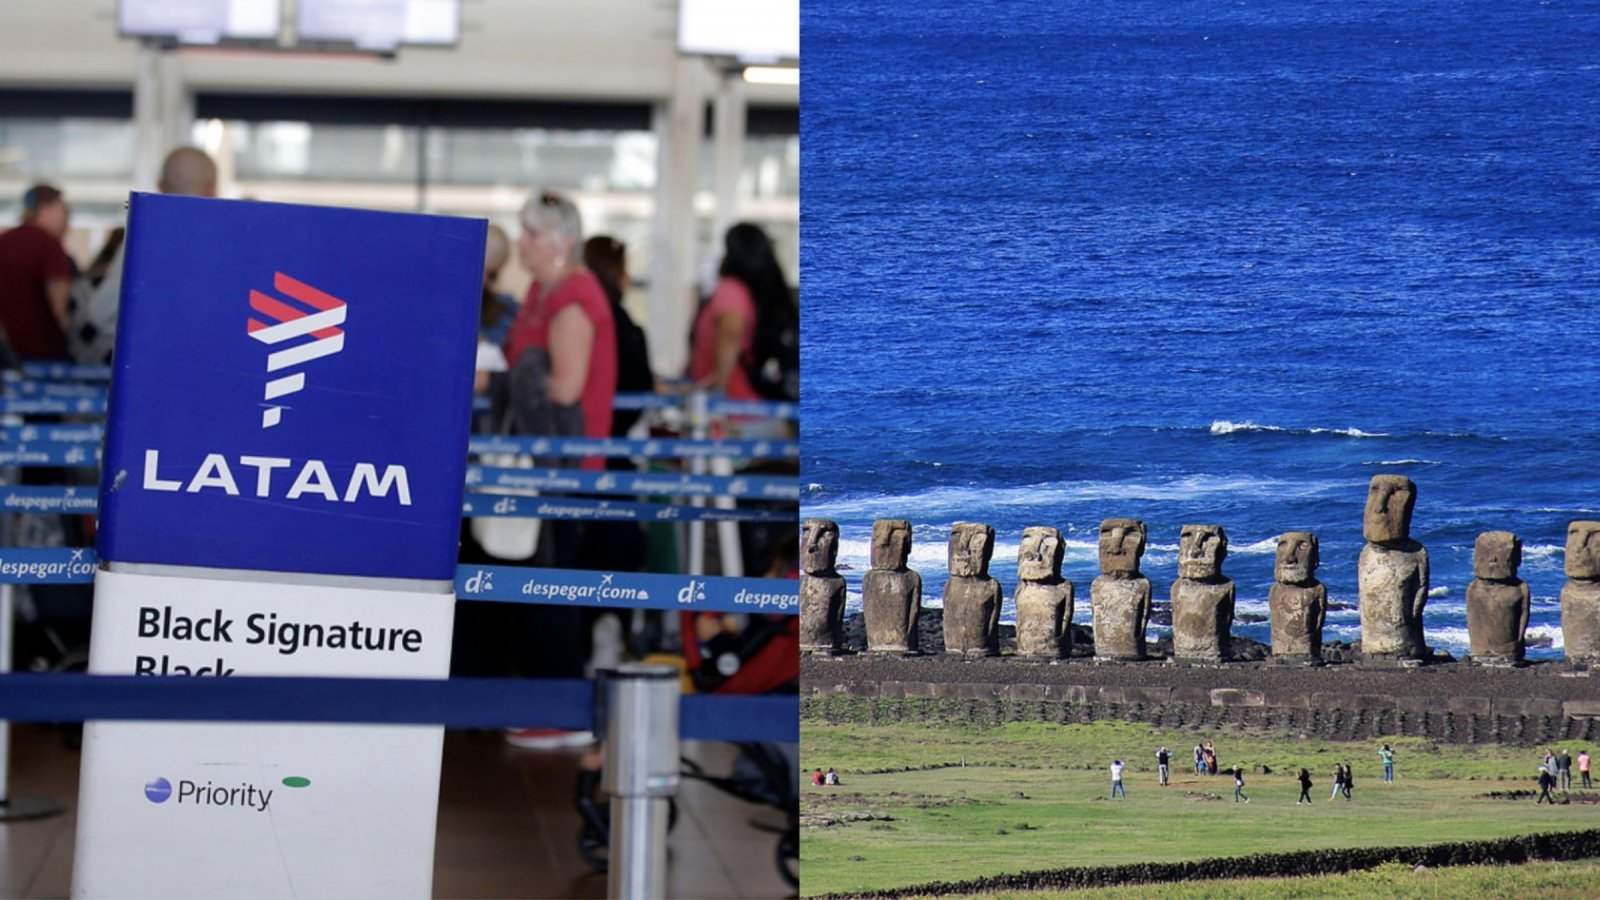 Fila de LATAM en aeropuerto y moais de Rapa Nui.